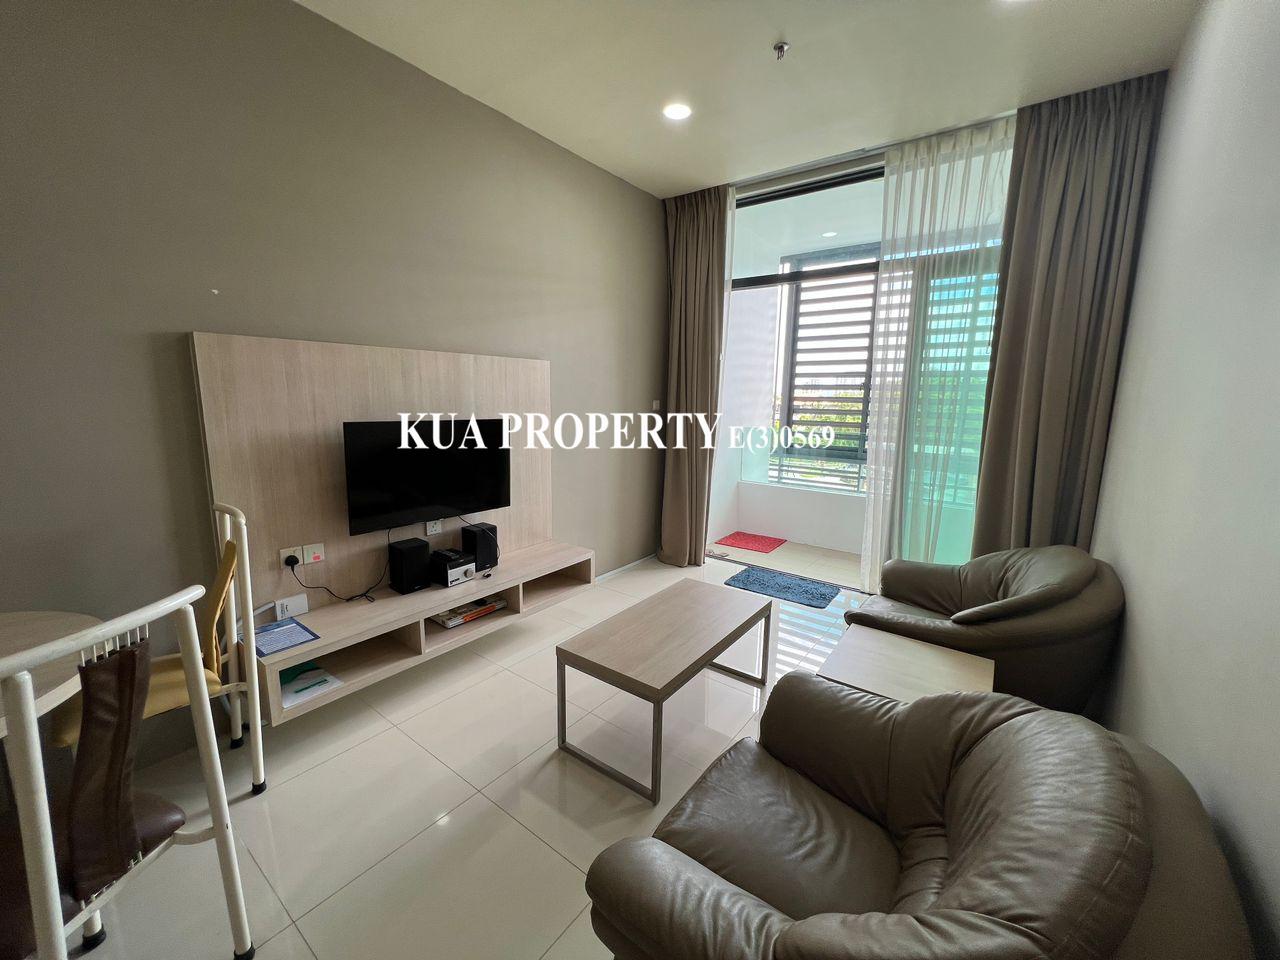 Upland Service Suite Apartment For Rent! at Jalan Simpang Tiga